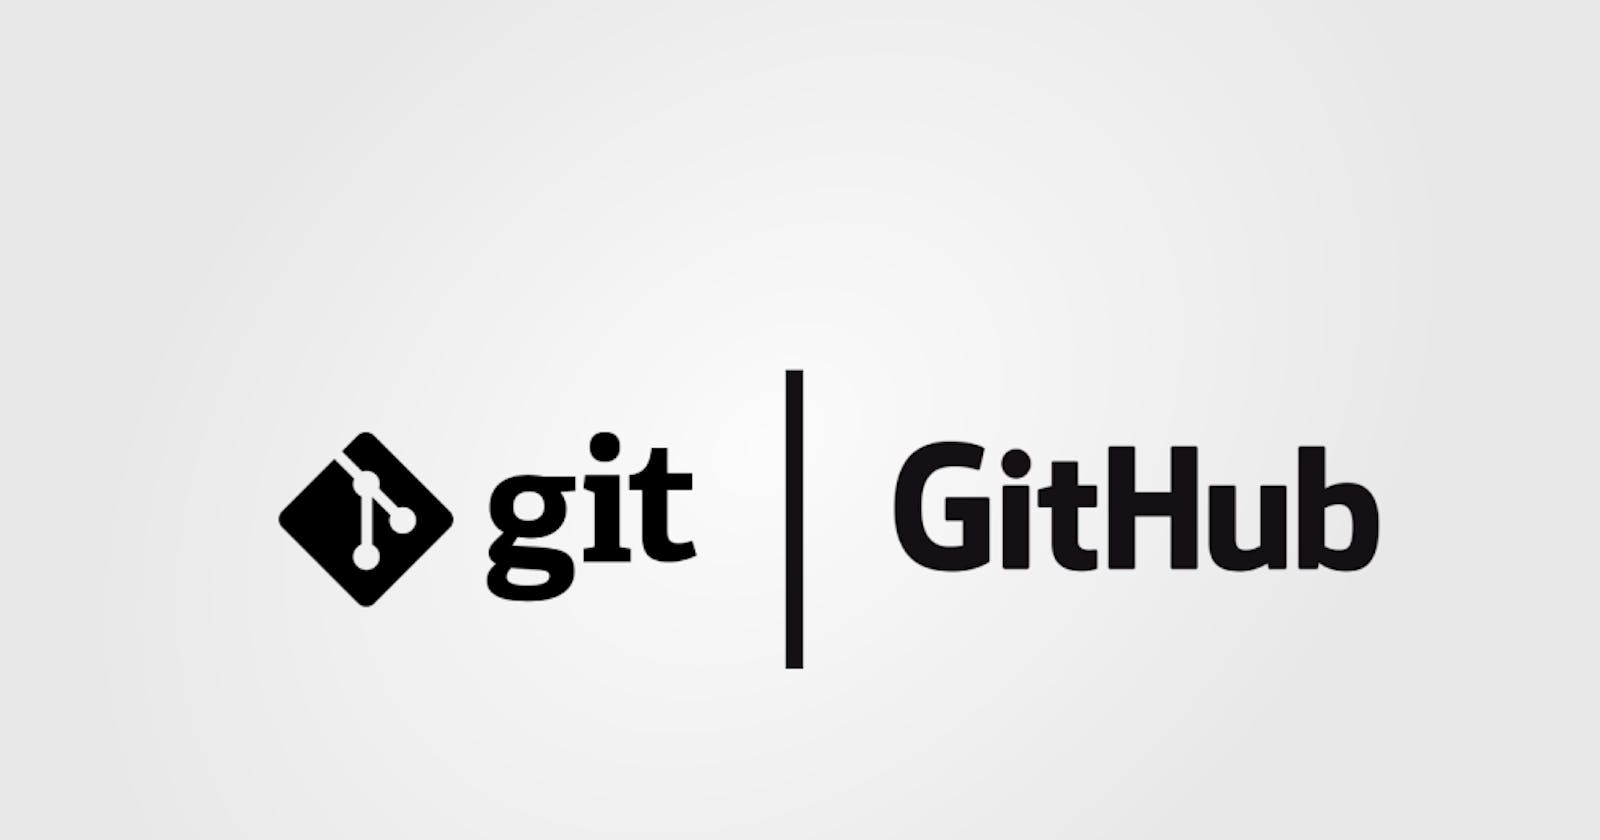 Git and GitHub - The Game Changer